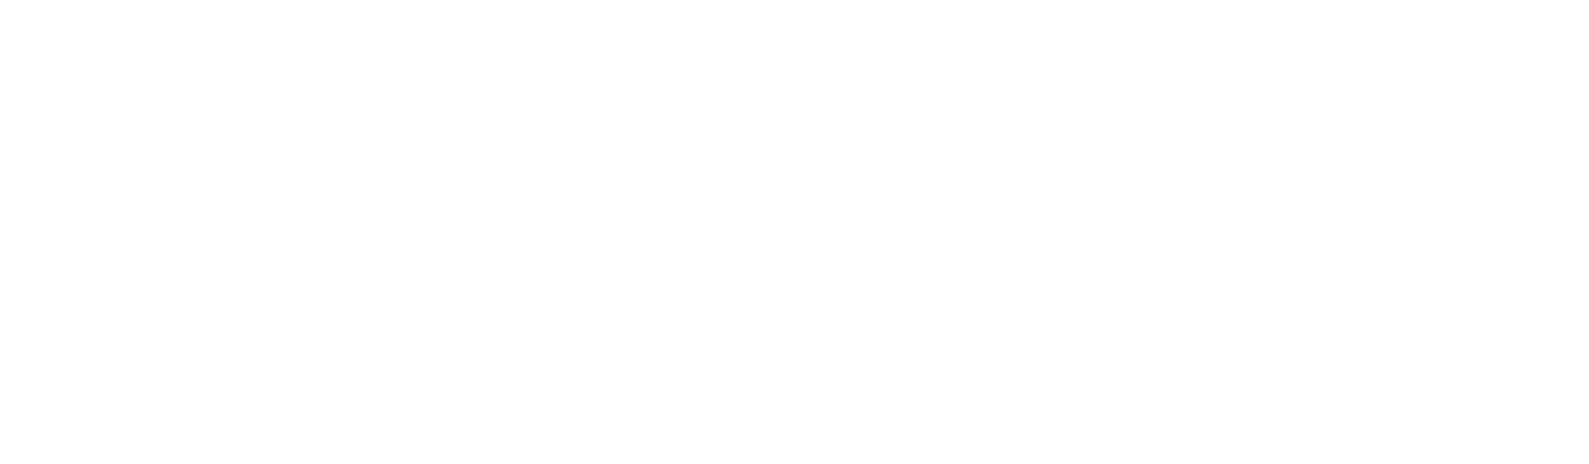 EQT logo pour fonds sombres (PNG transparent)